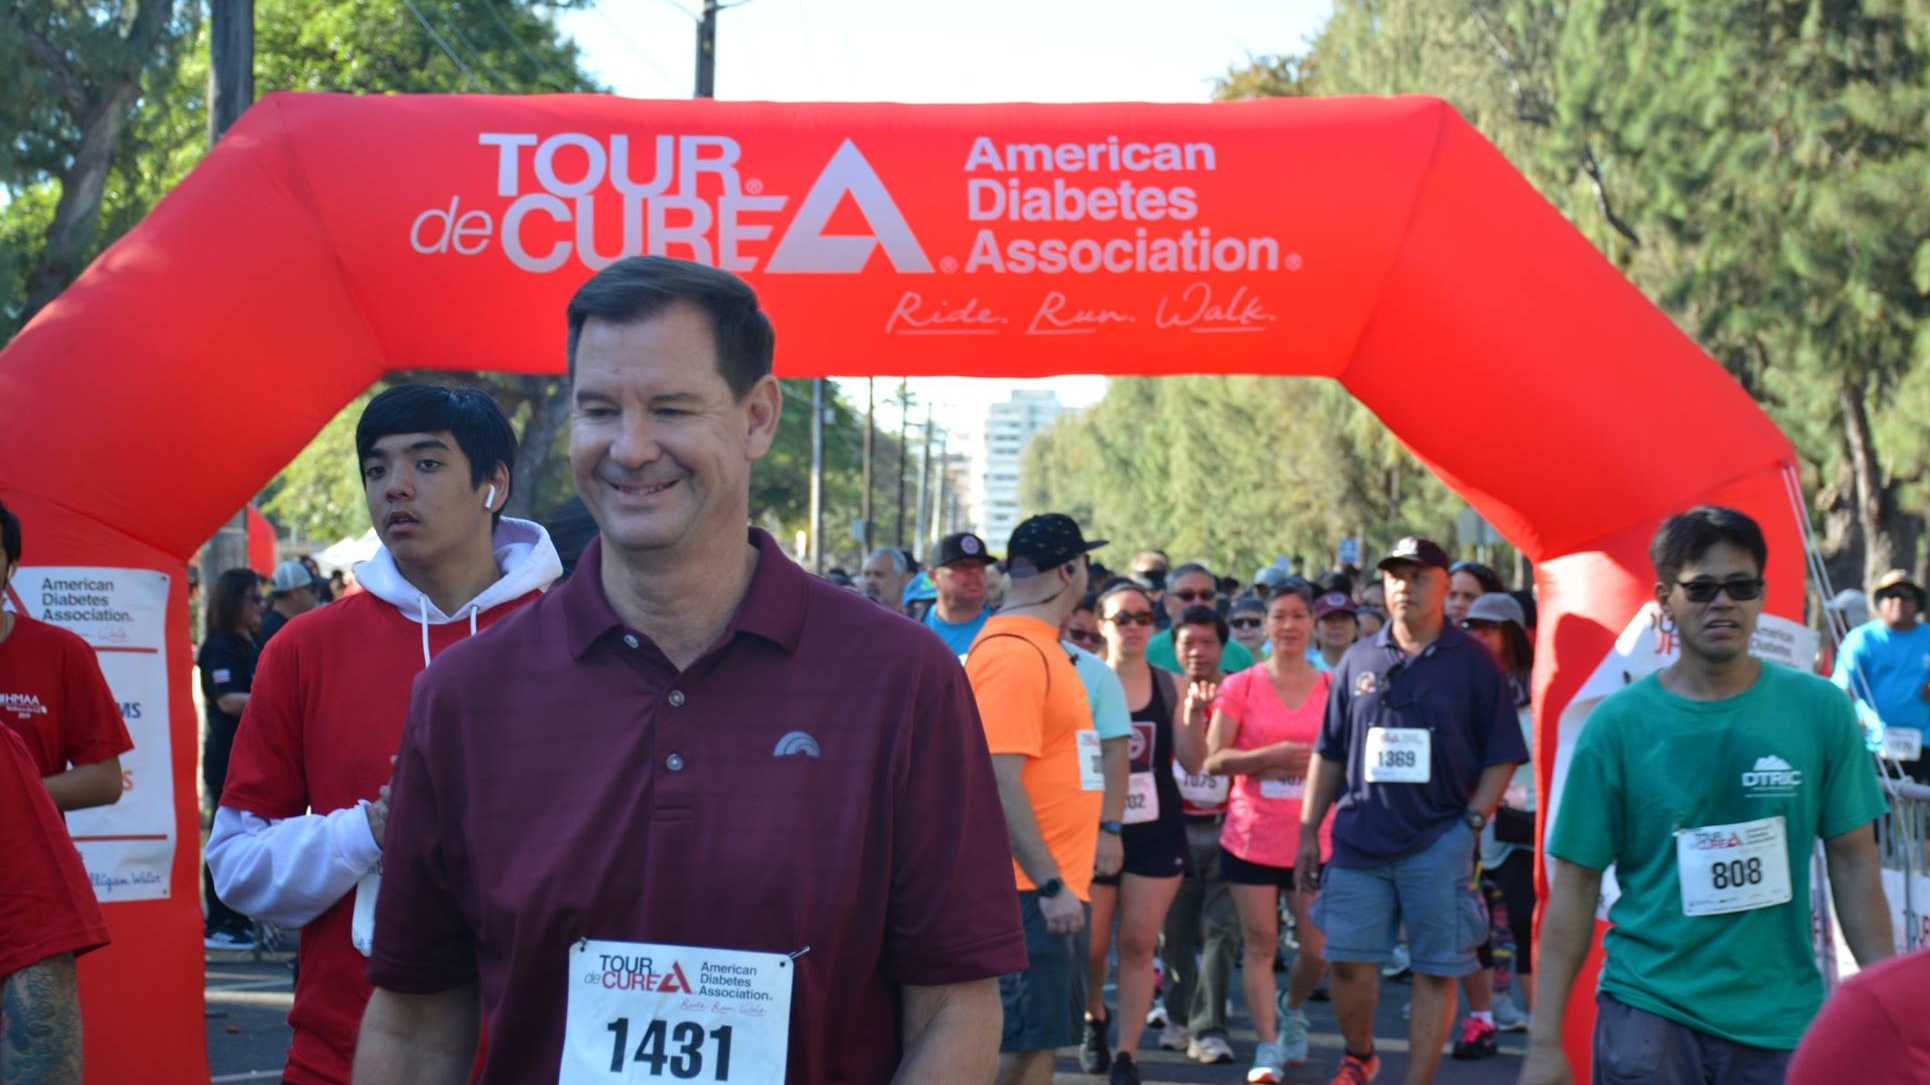 American Diabetes Association’s “Tour de Cure”